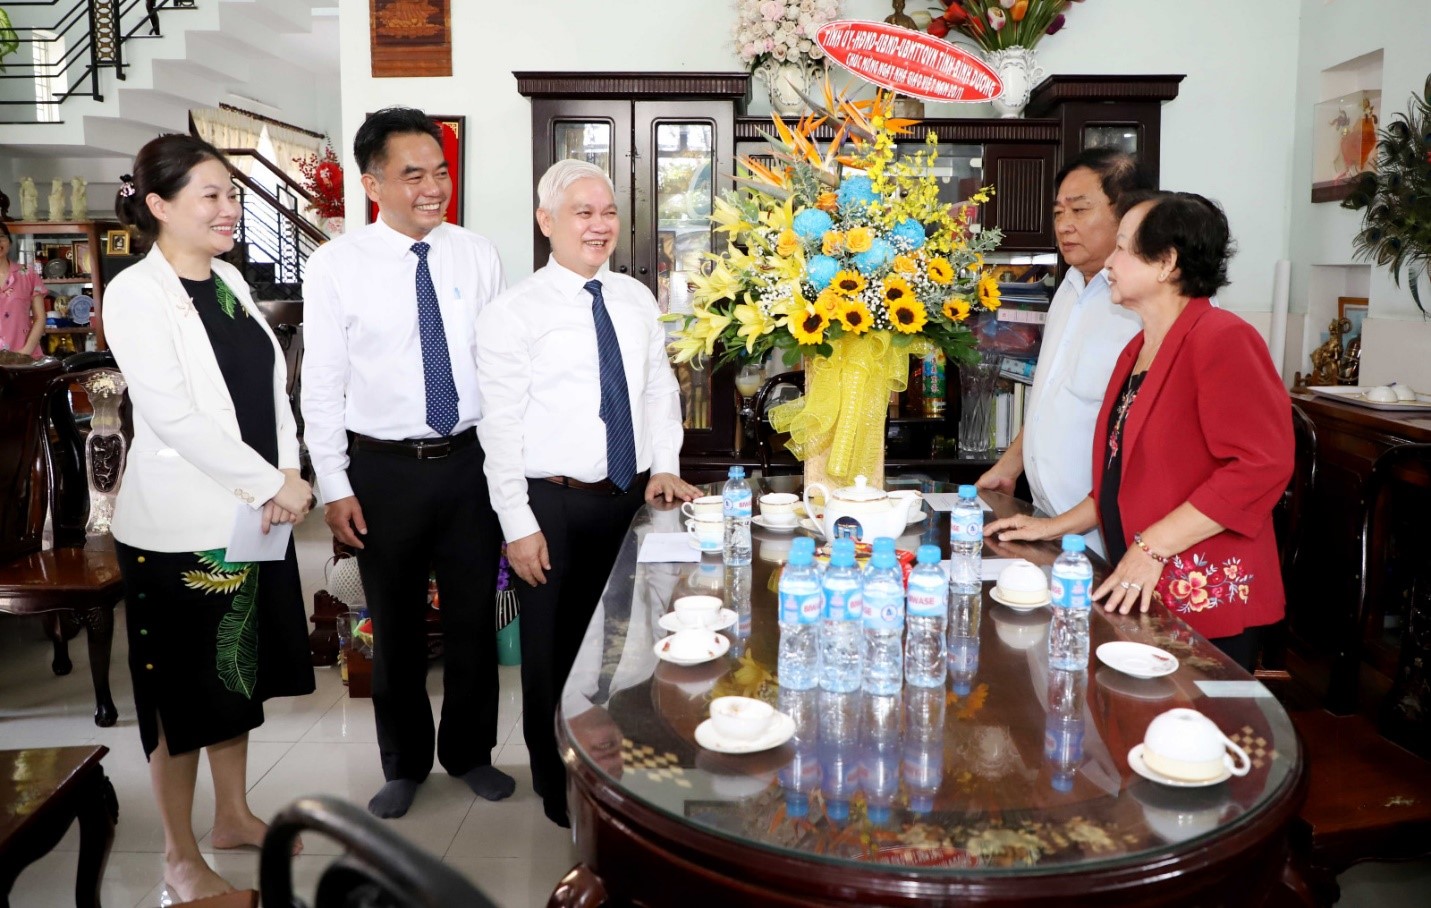 Đoàn công tác của lãnh đạo tỉnh thăm, chúc mừng đồng chíNguyễn Huỳnh Phụng, nguyên Giám đốc Sở GD&ĐT tỉnh Bình Dương.